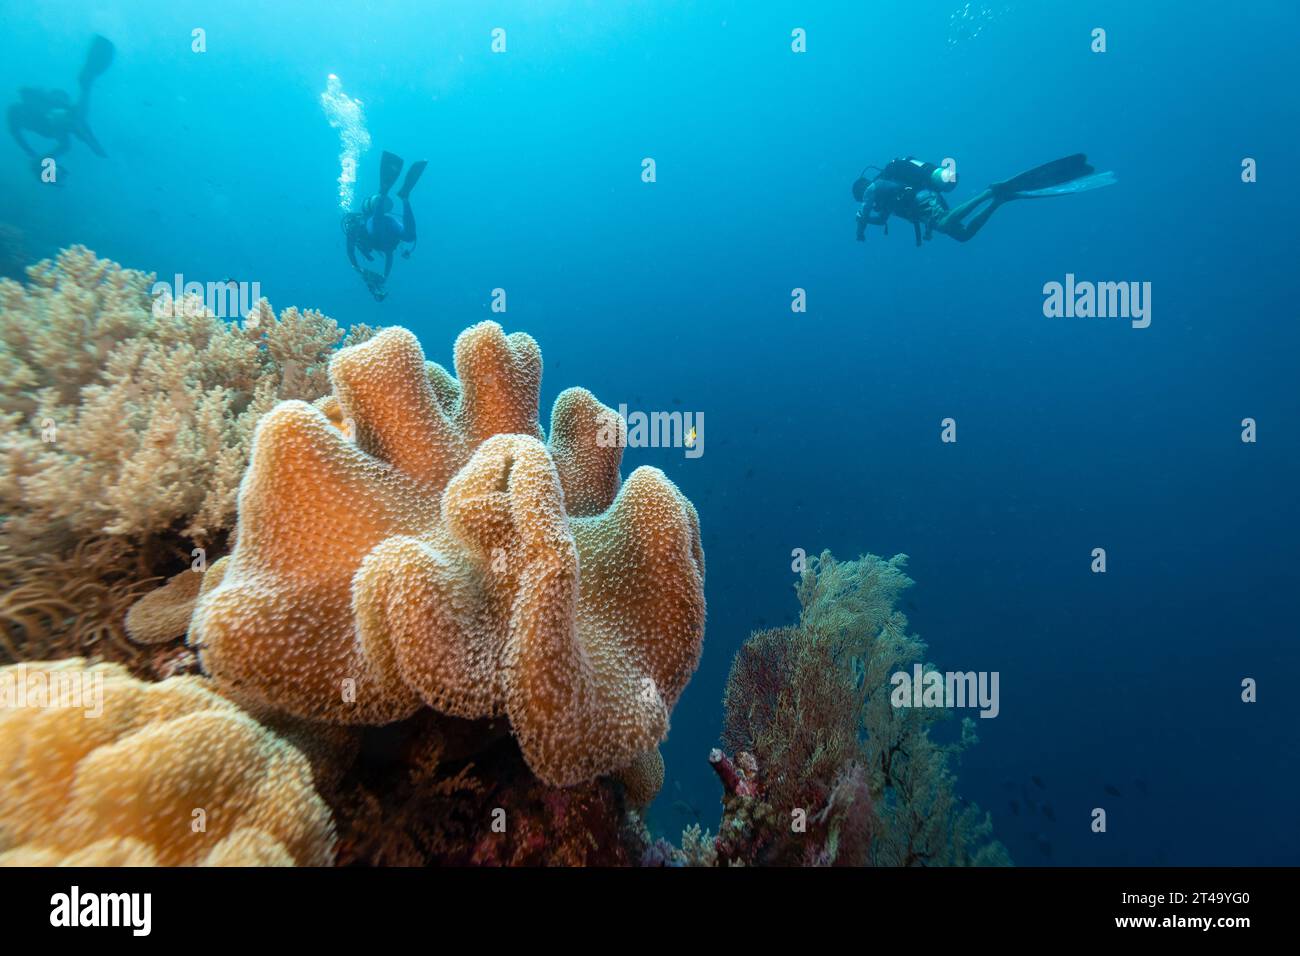 Gruppo di subacquei nuotano accanto a un grande corallo di pelle, Sarcophyton glaucum, affioramento mentre nuotano attraverso acque tropicali blu Foto Stock